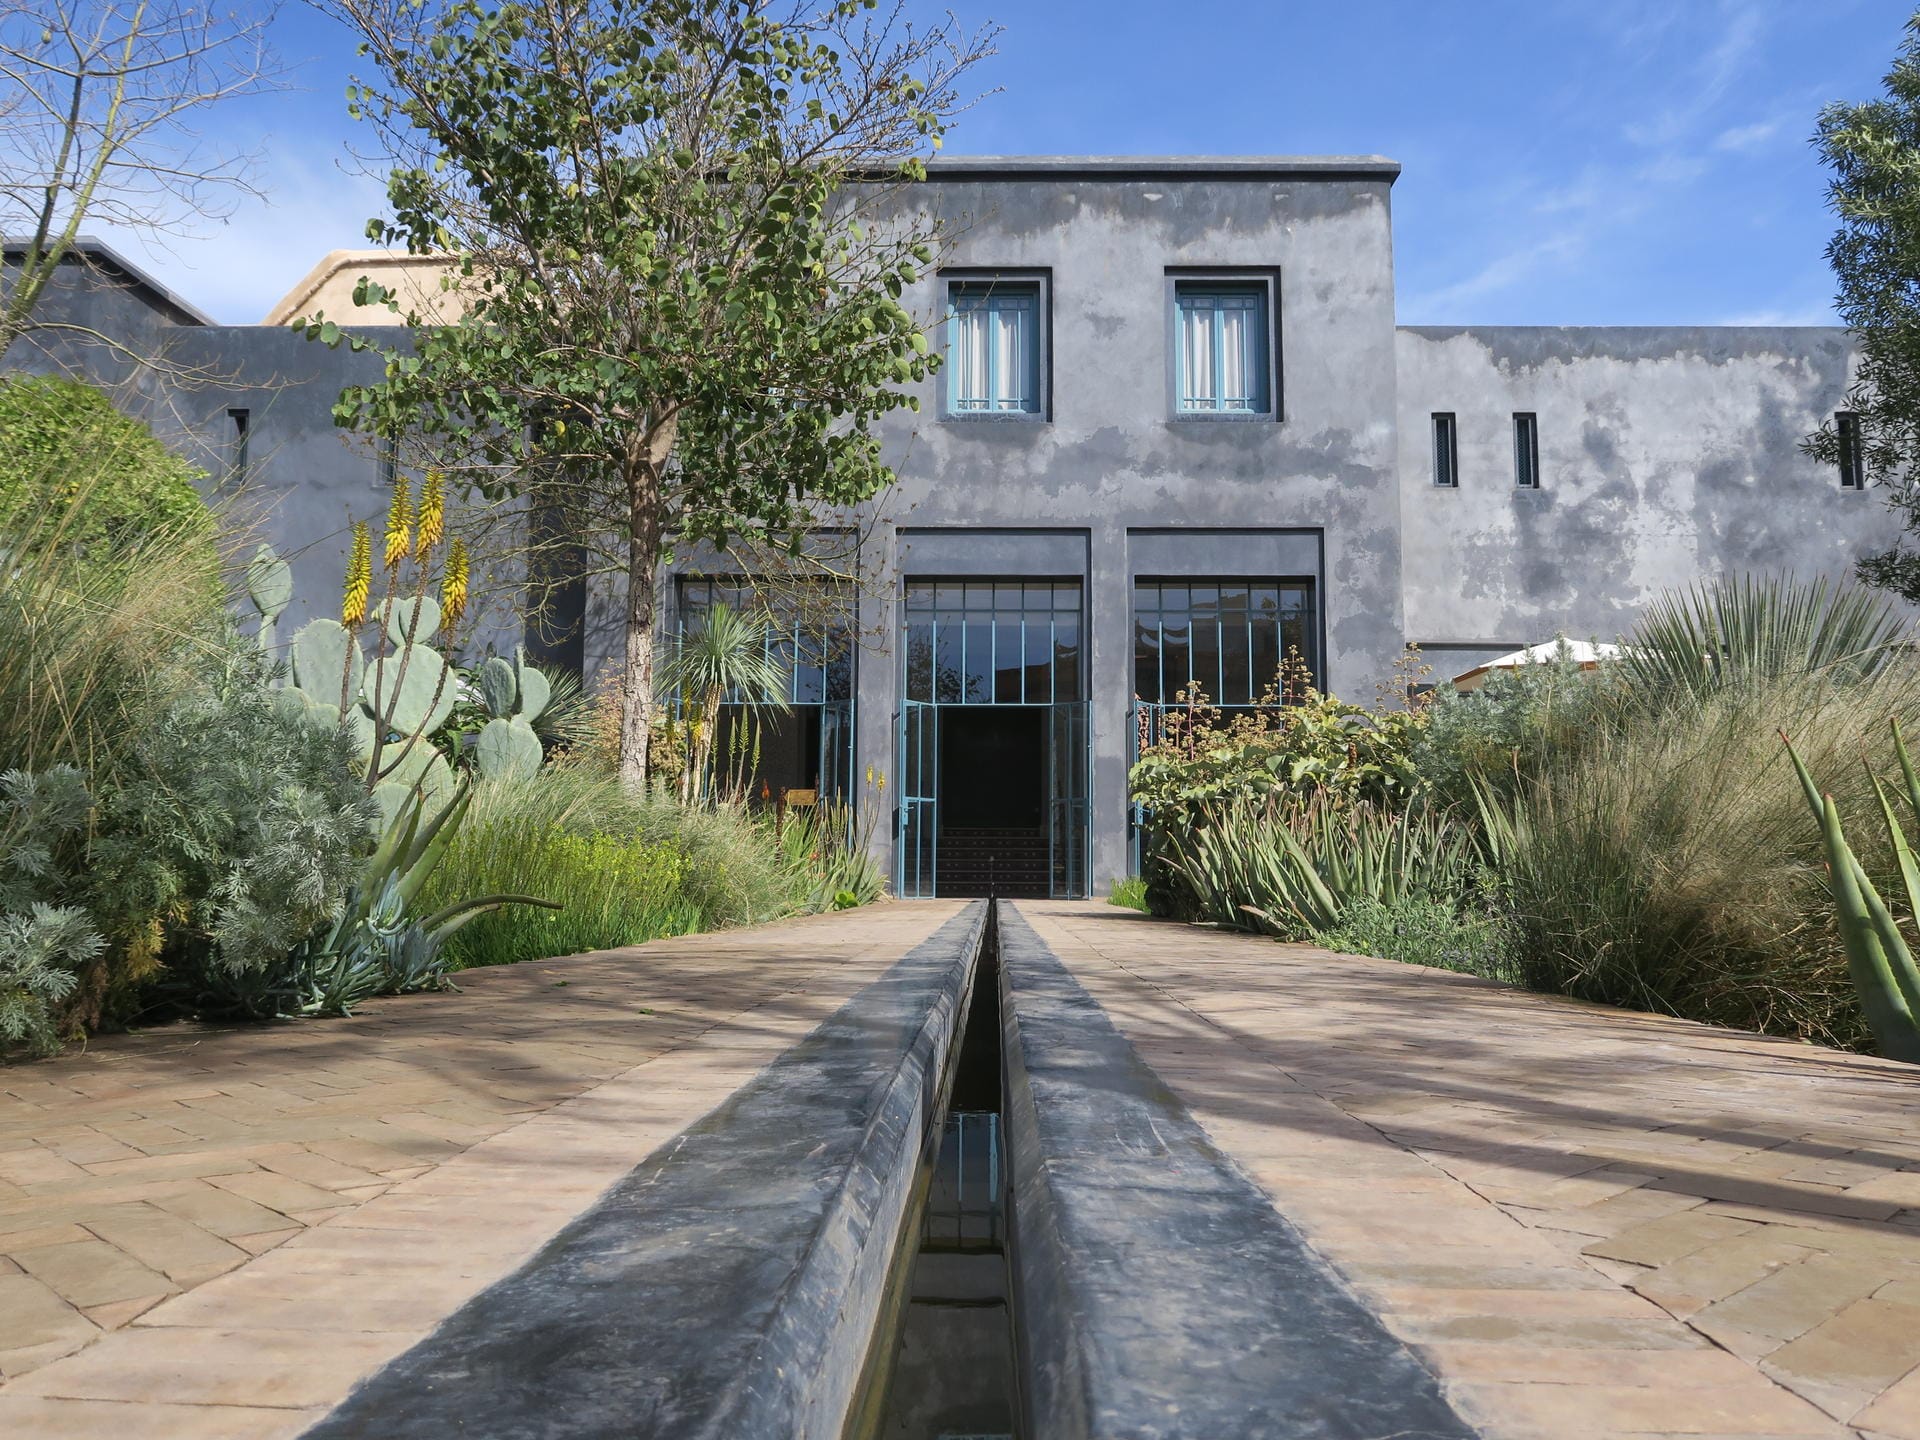 Der Jardin Secret gehört zu einem alten Riad, einem traditionellen marokkanischen Haus mit Hofgarten.